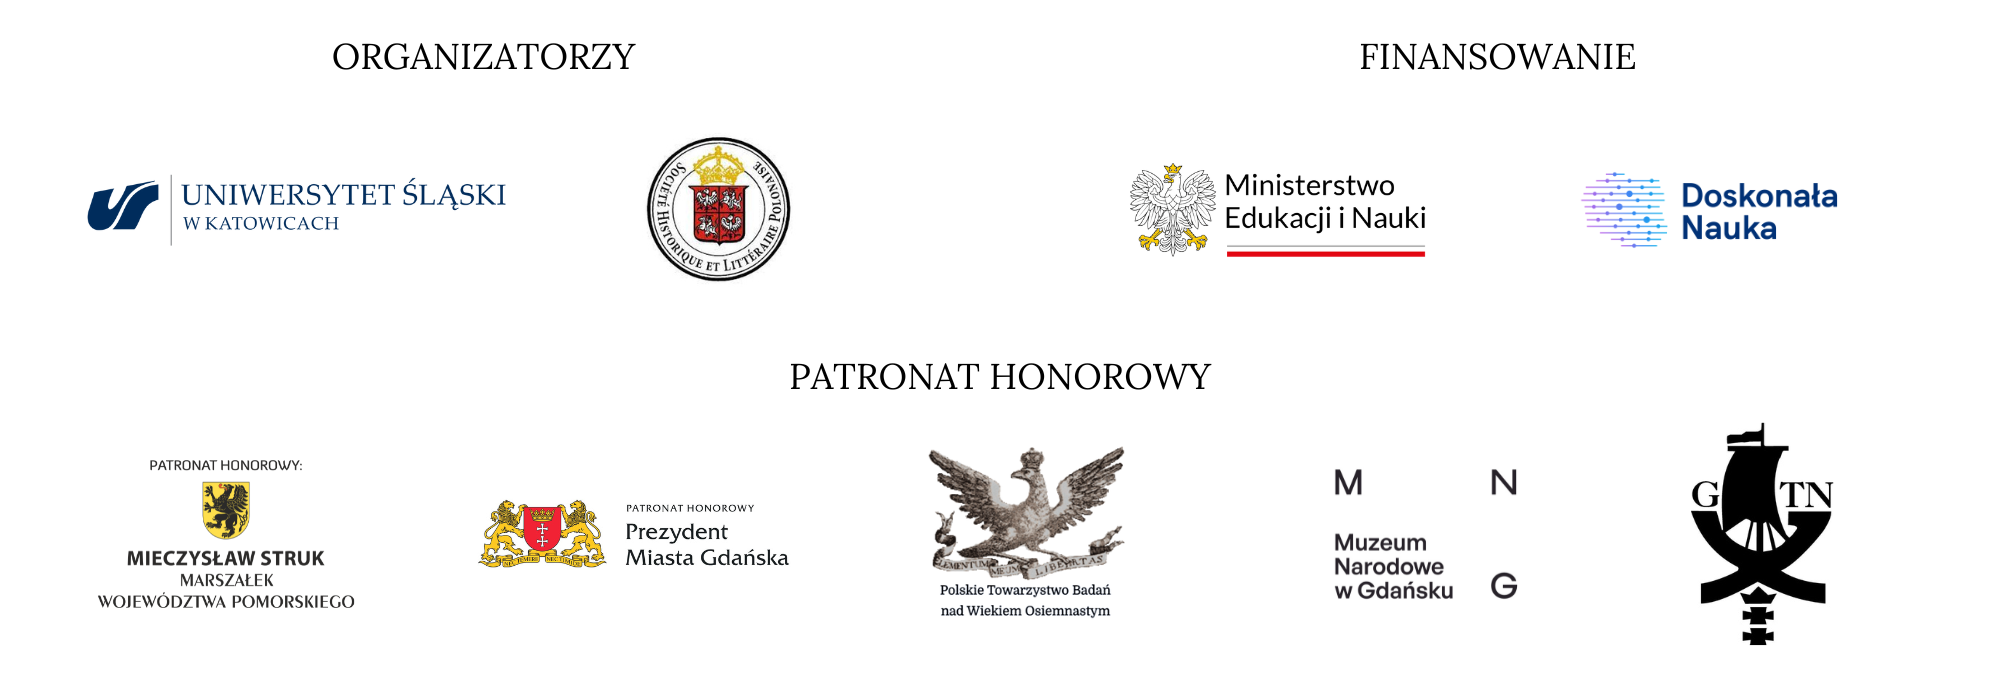 logo organizatorów, instytucji finansujących i patronatów honorowych